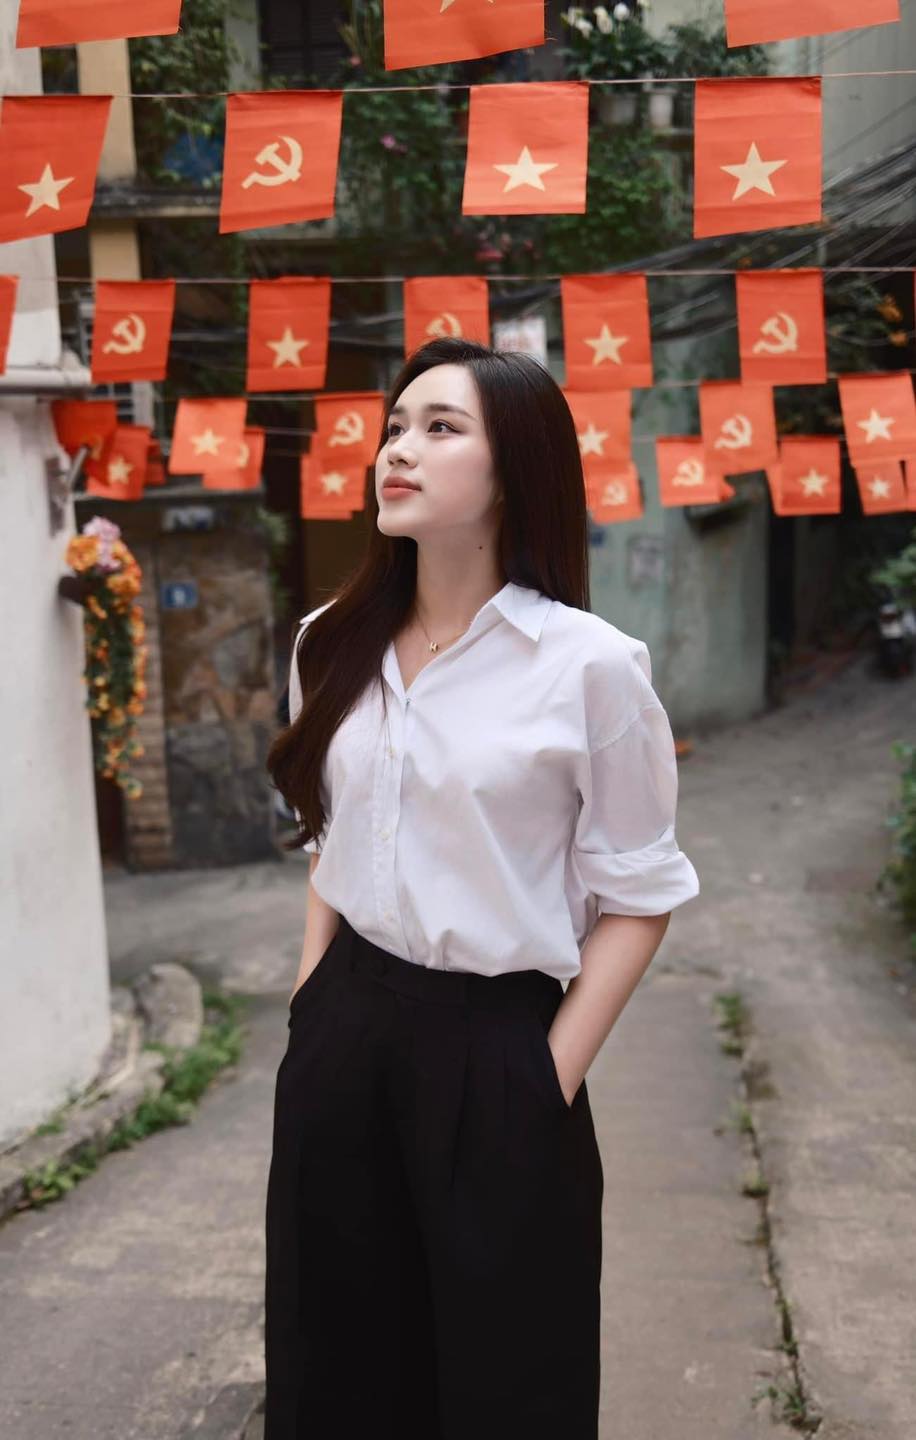 Hoa hậu Tiểu Vy, Bùi Quỳnh Hoa đồng loạt check-in địa điểm đặc biệt kỷ niệm 30/4- Ảnh 17.